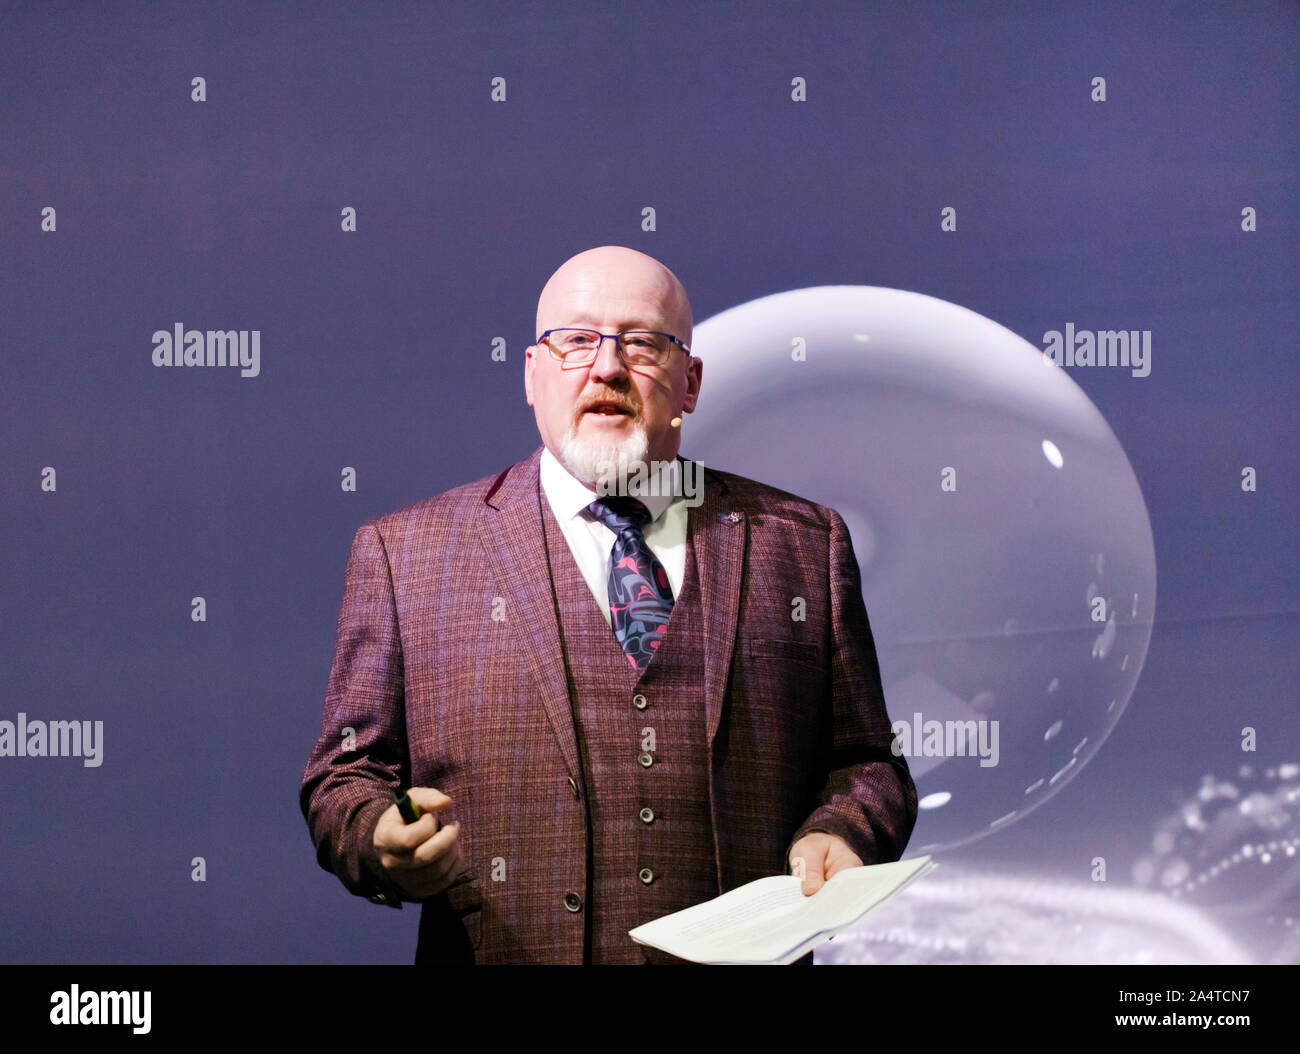 Ralph Dinsley, fondateur et directeur exécutif, le nord de l'espace et de la sécurité sa, parle de 'Comment nettoyer l'espace Junk', sur le Cosmos, au New Scientist Live 2019 Banque D'Images